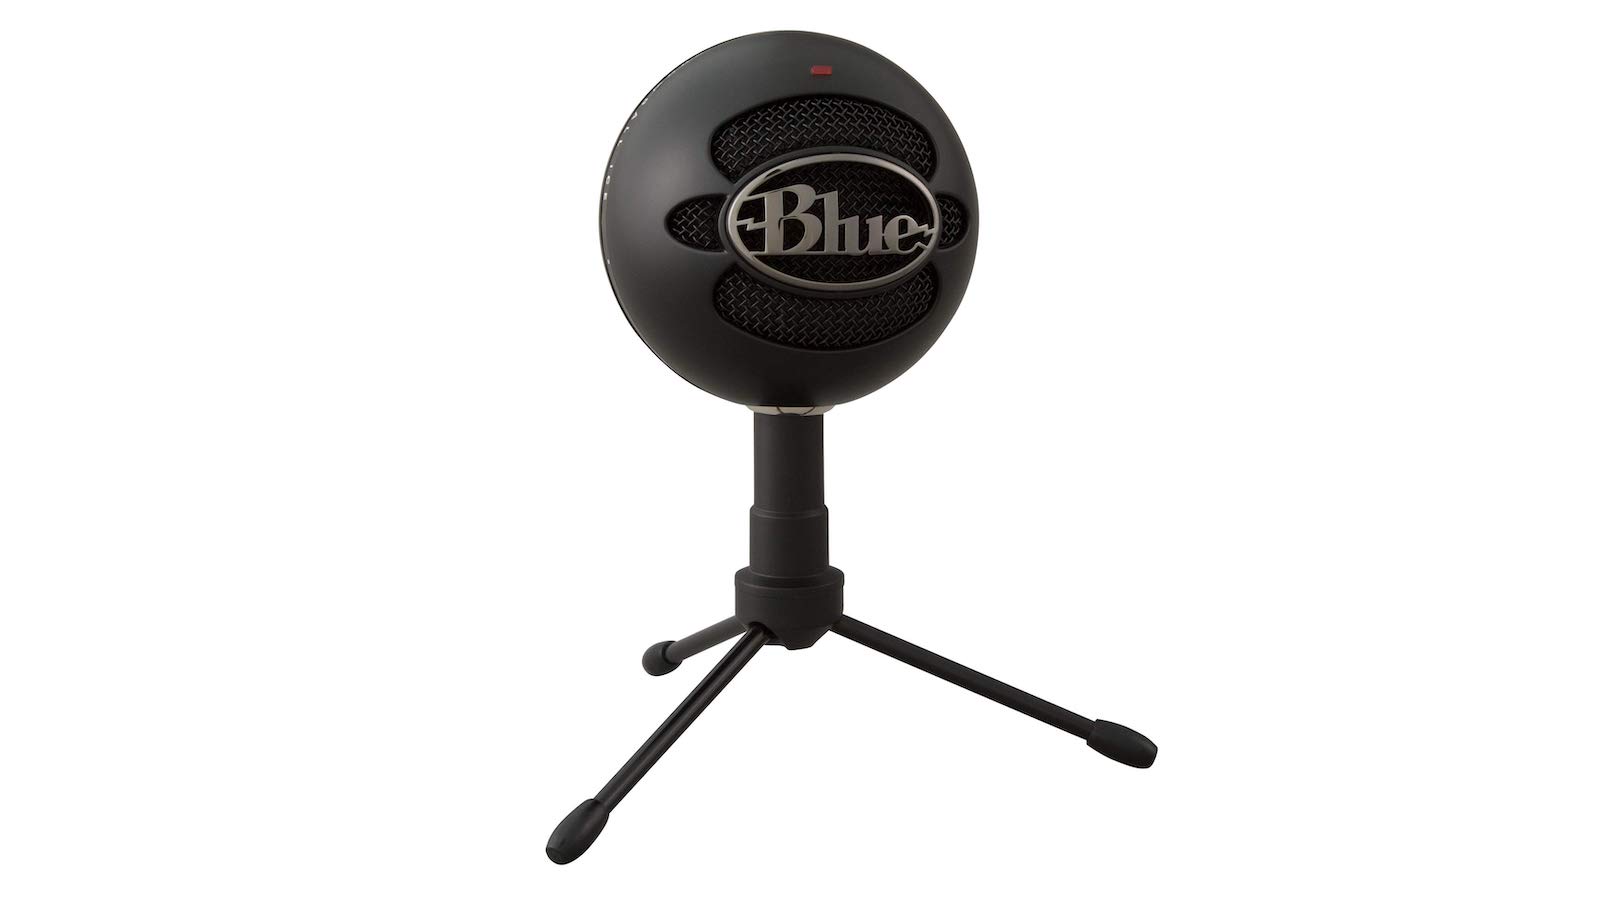 Blue Snowball iCE mic